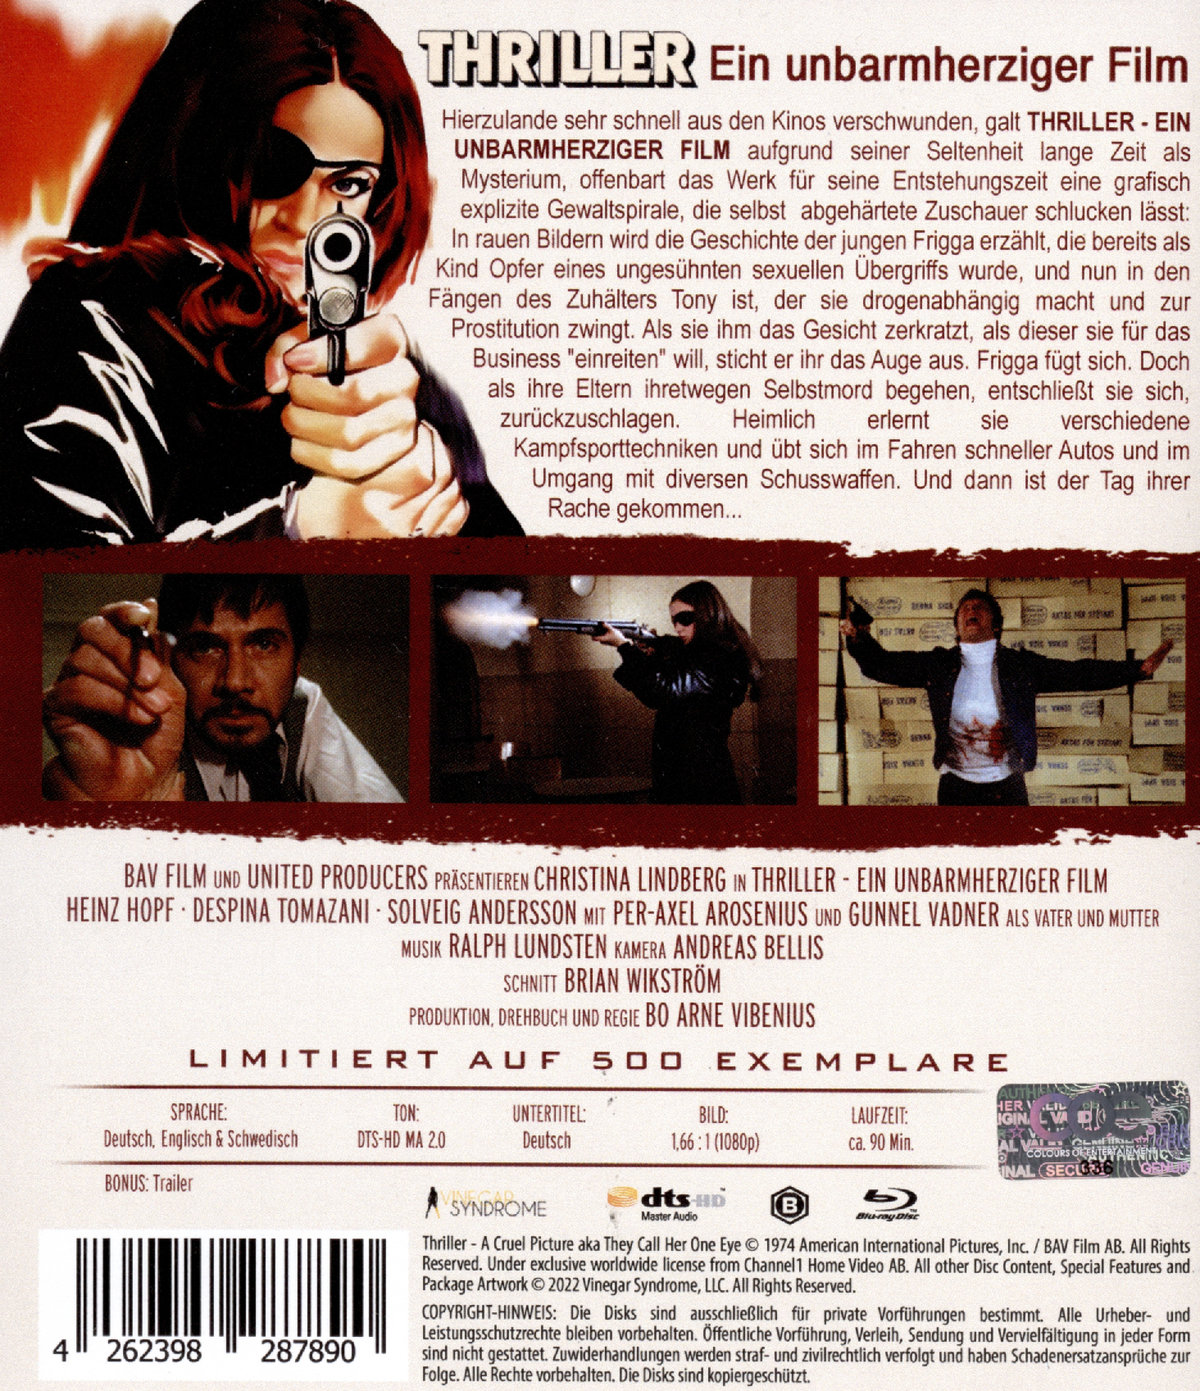 THRILLER - Ein unbarmherziger Film - Festivalfassung  (Blu-ray Disc)